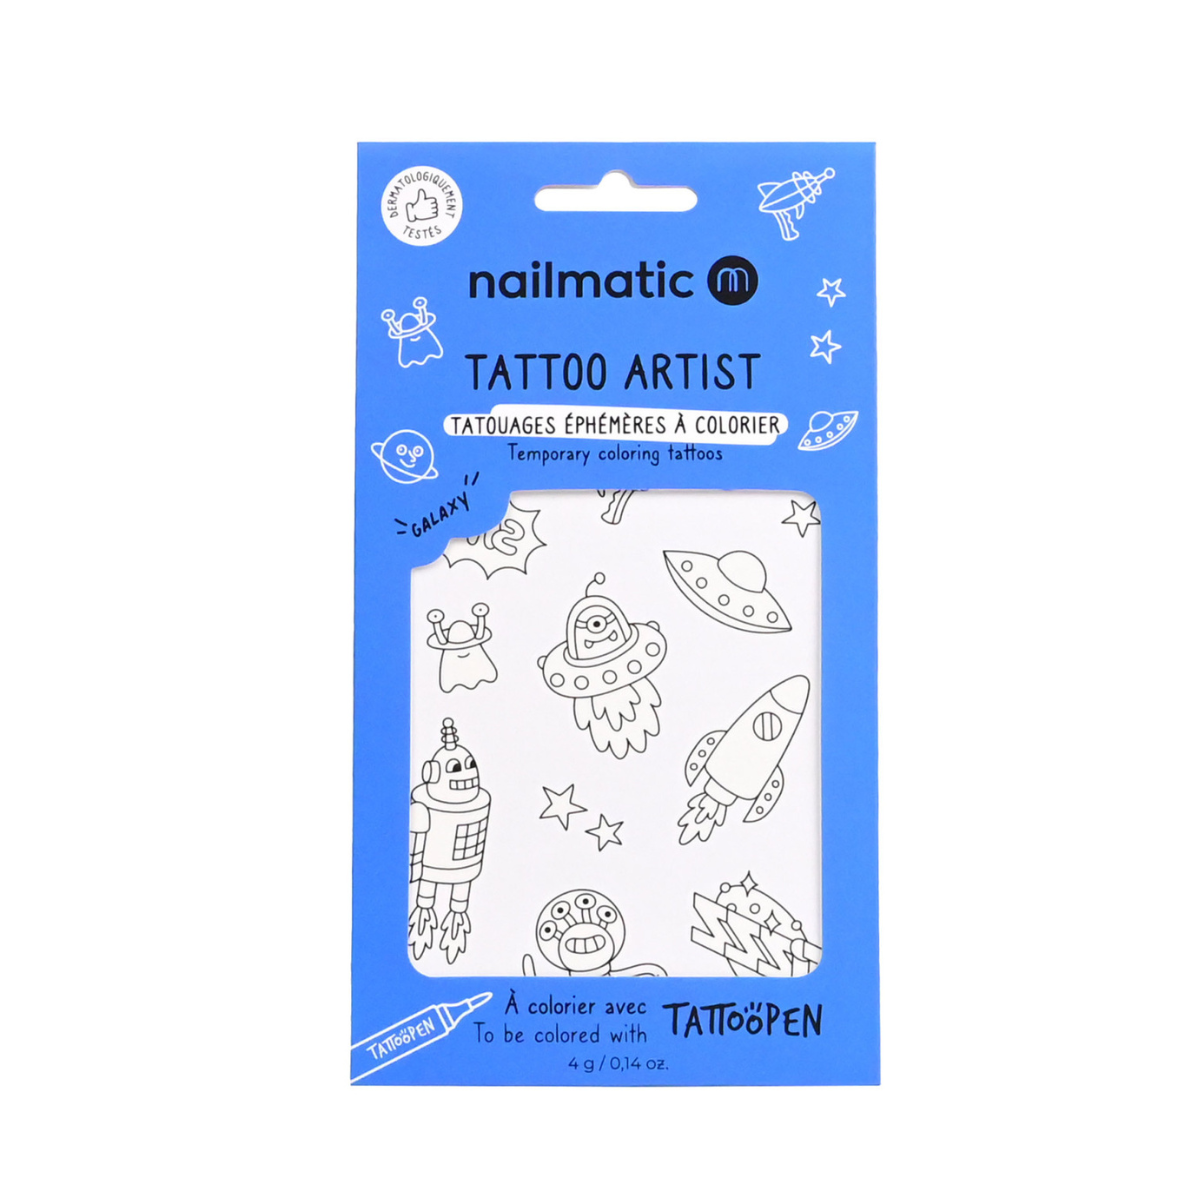 Nailmatic – Tattoo artist Galaxy